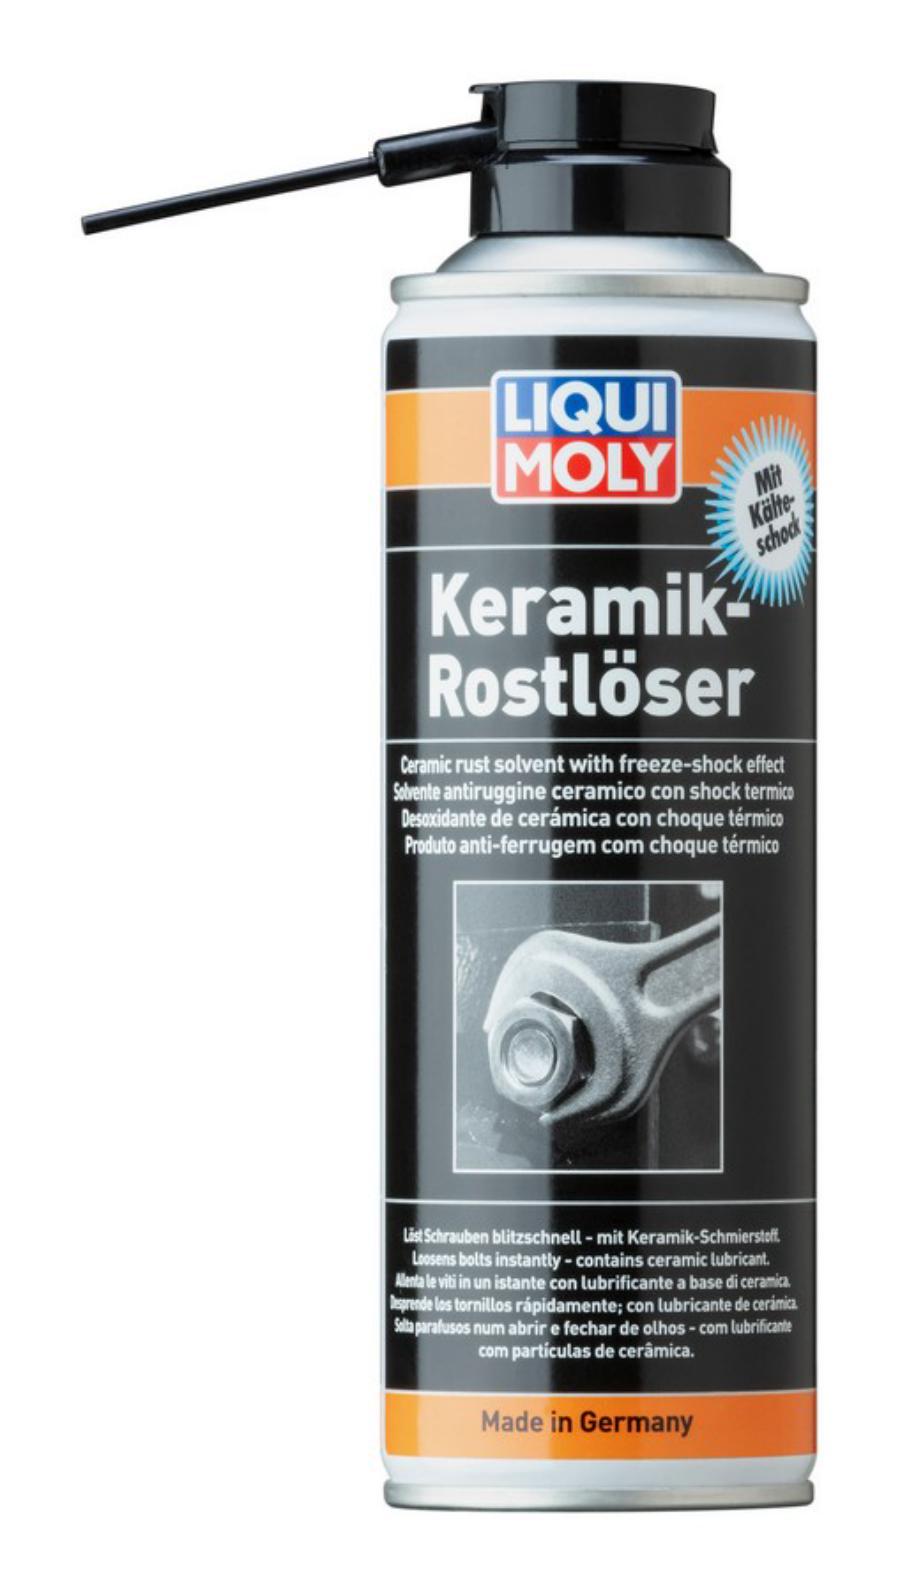 LiquiMoly Keramik Rostloser mit Kalteschock 0.3L_растворитель ржавчины с керамикой и эфф.х